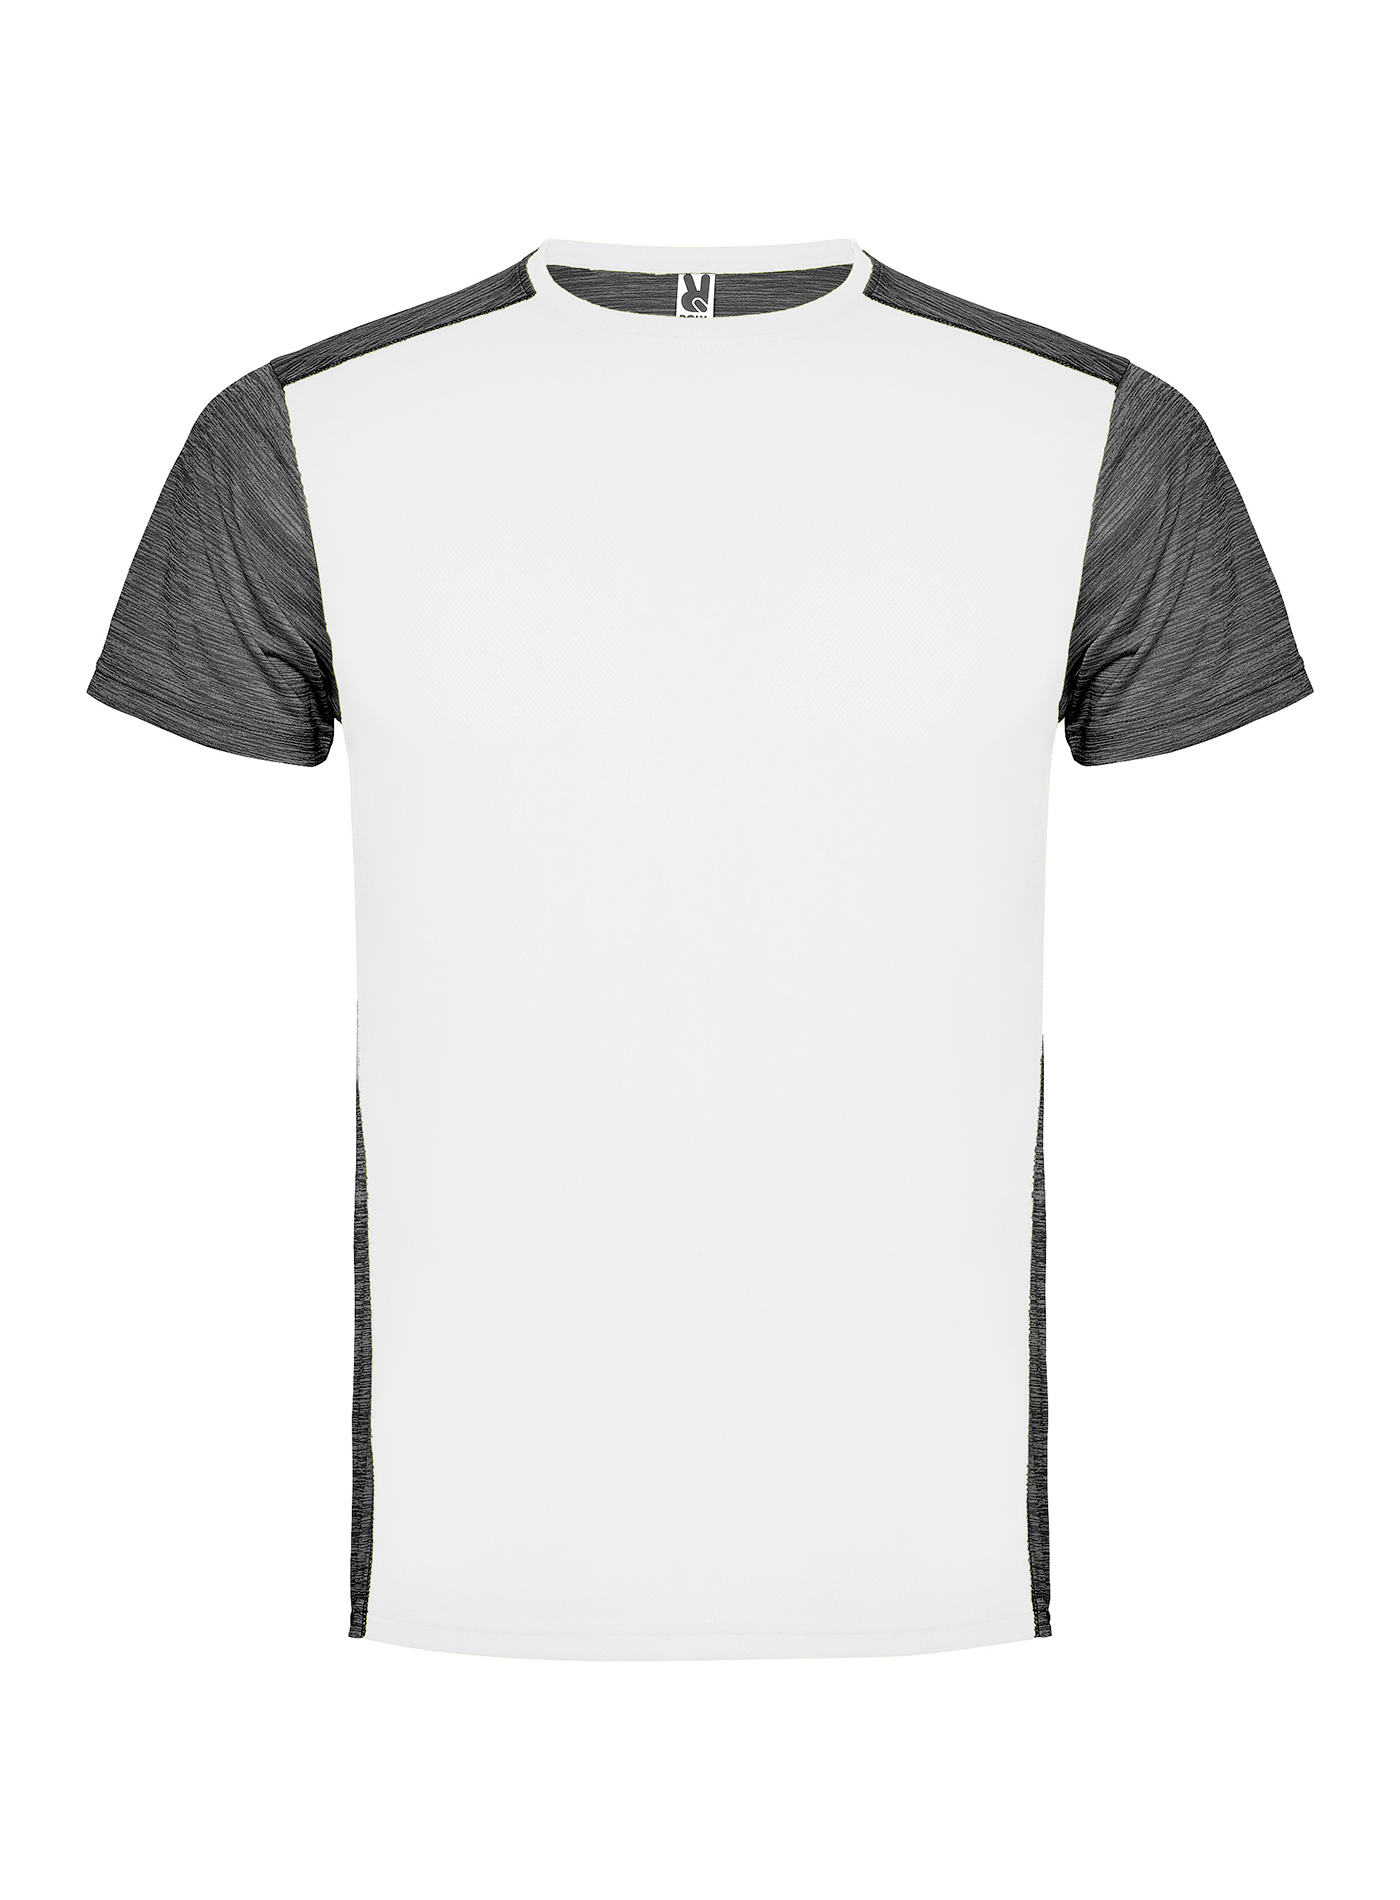 Pánské/Dětské sportovní tričko Roly Zolder - Bílá a tmavě šedý melír XL